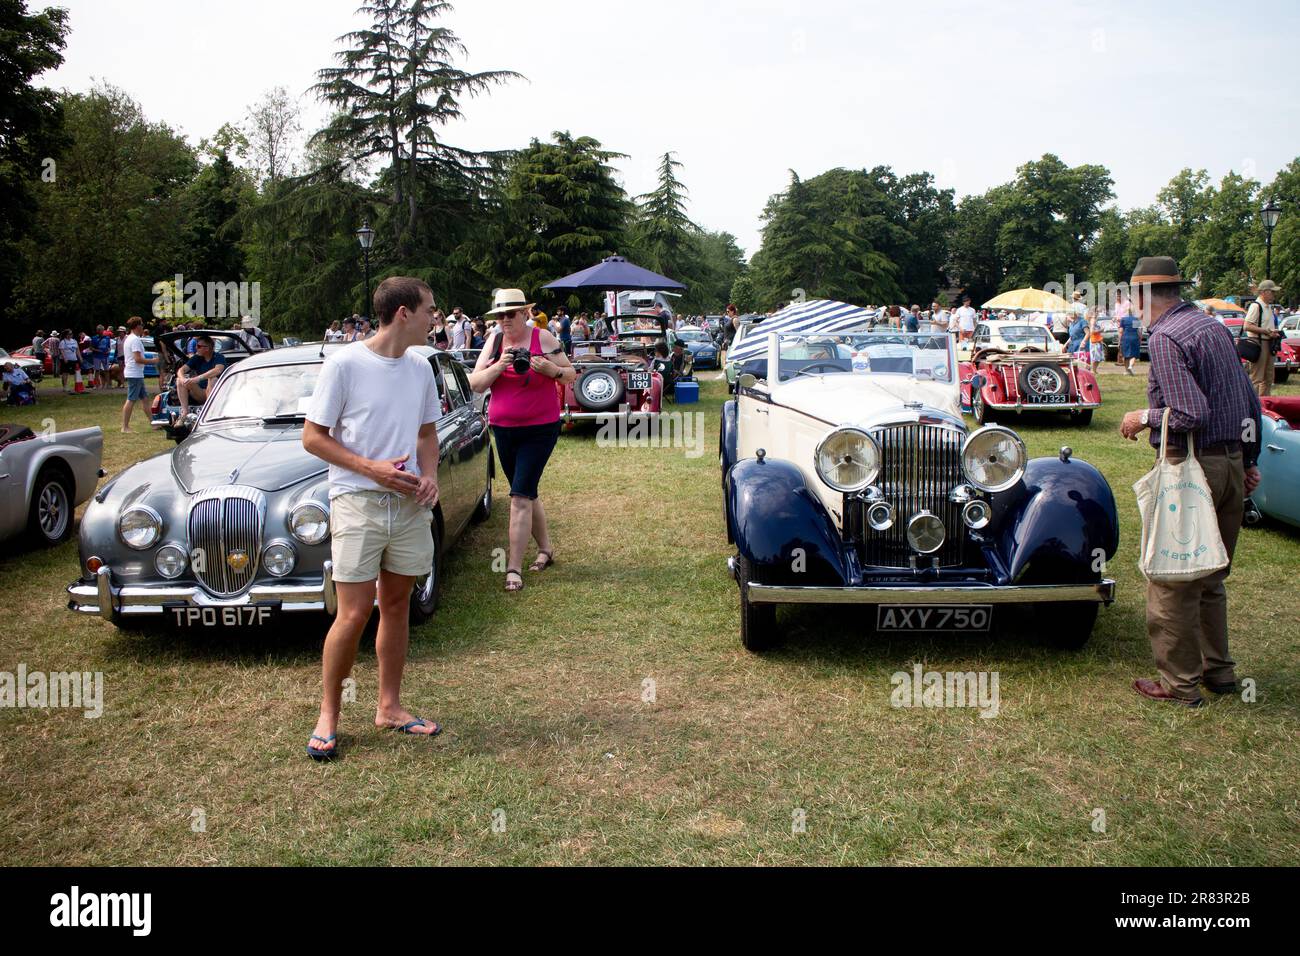 Spectacle de voiture classique, Pump Room Gardens, Leamington Spa, Warwickshire, Royaume-Uni Banque D'Images